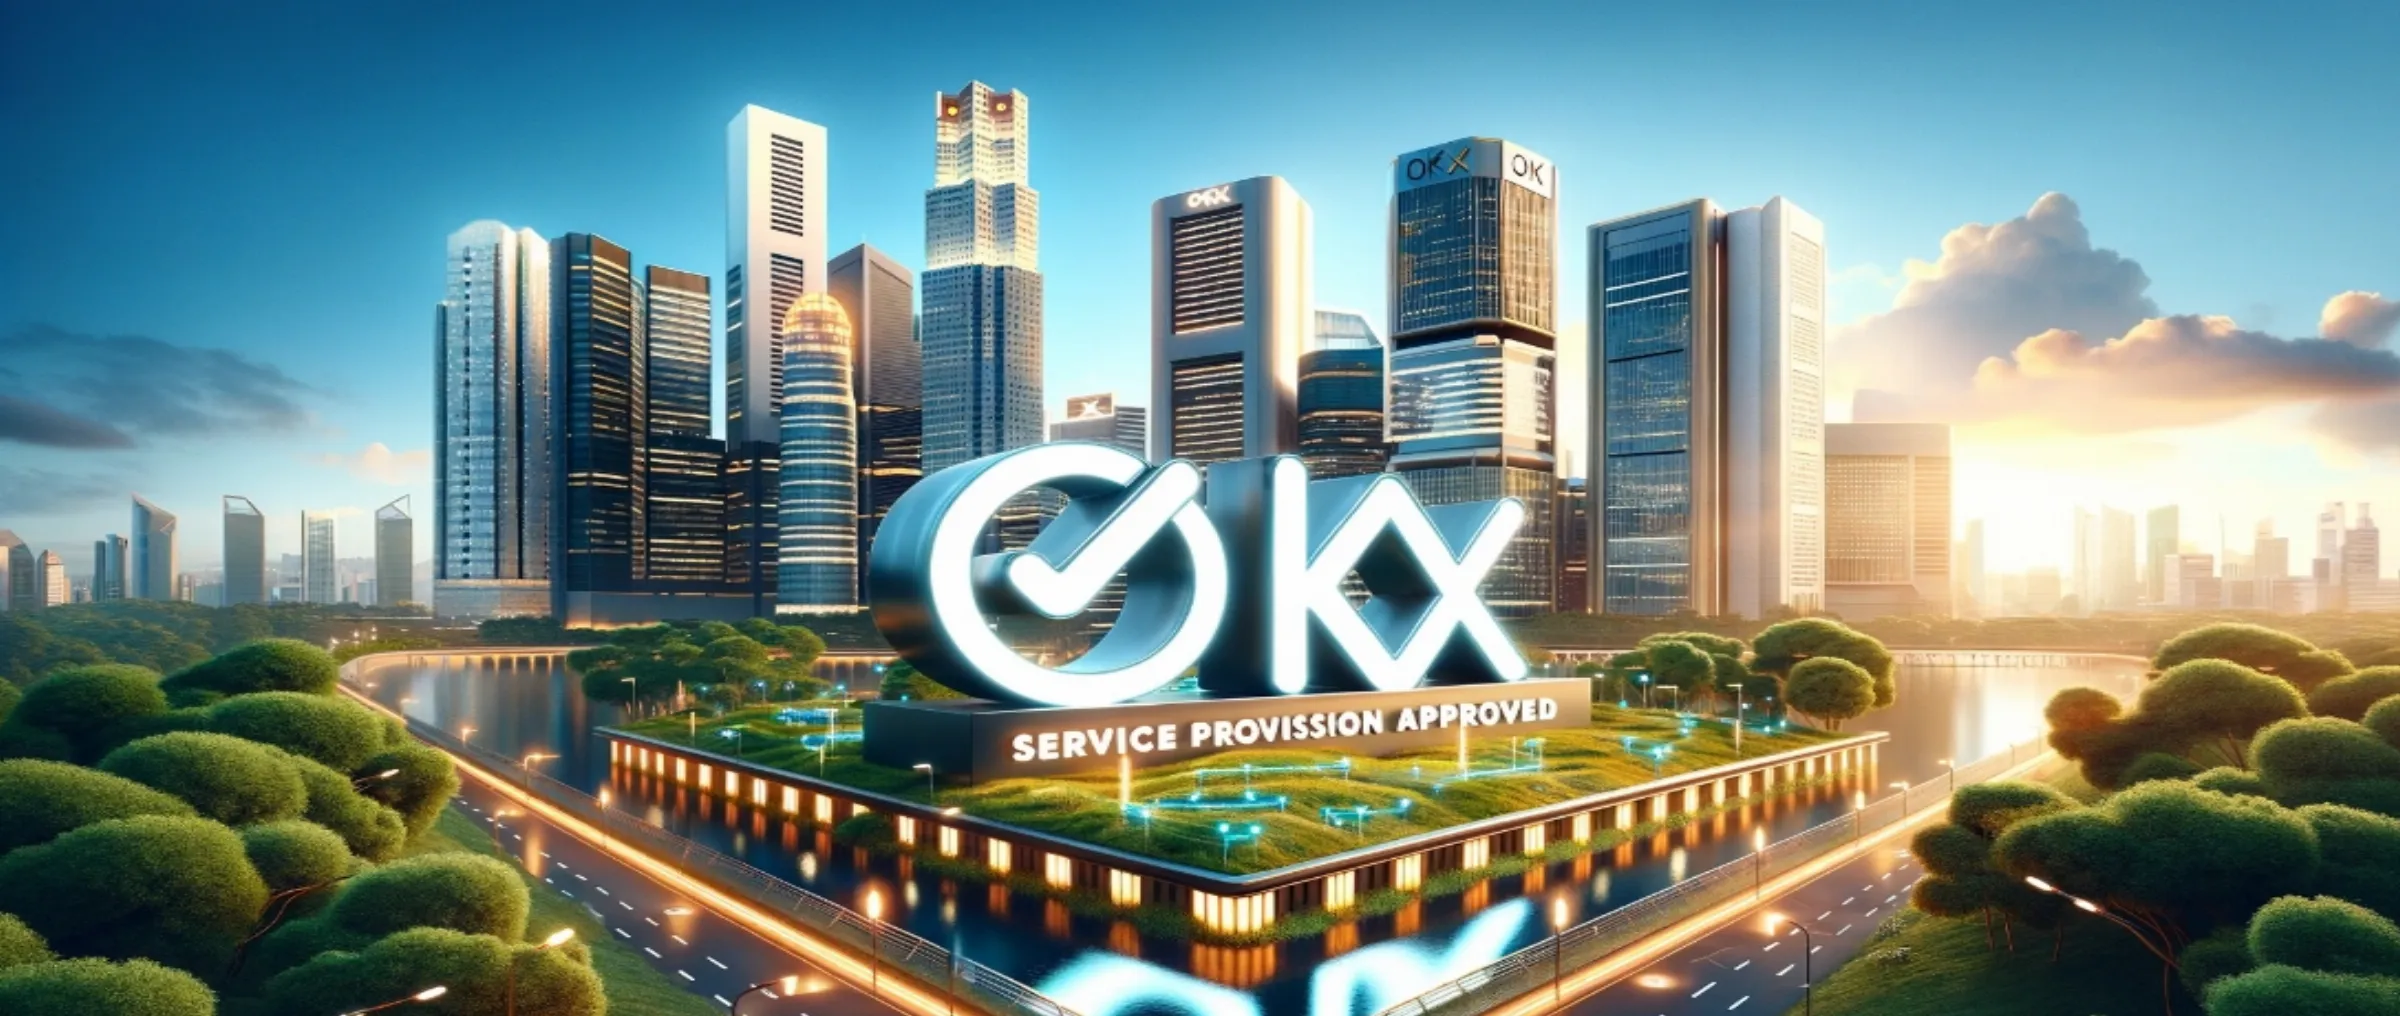 OKX получила разрешение на предоставление услуг в Сингапуре